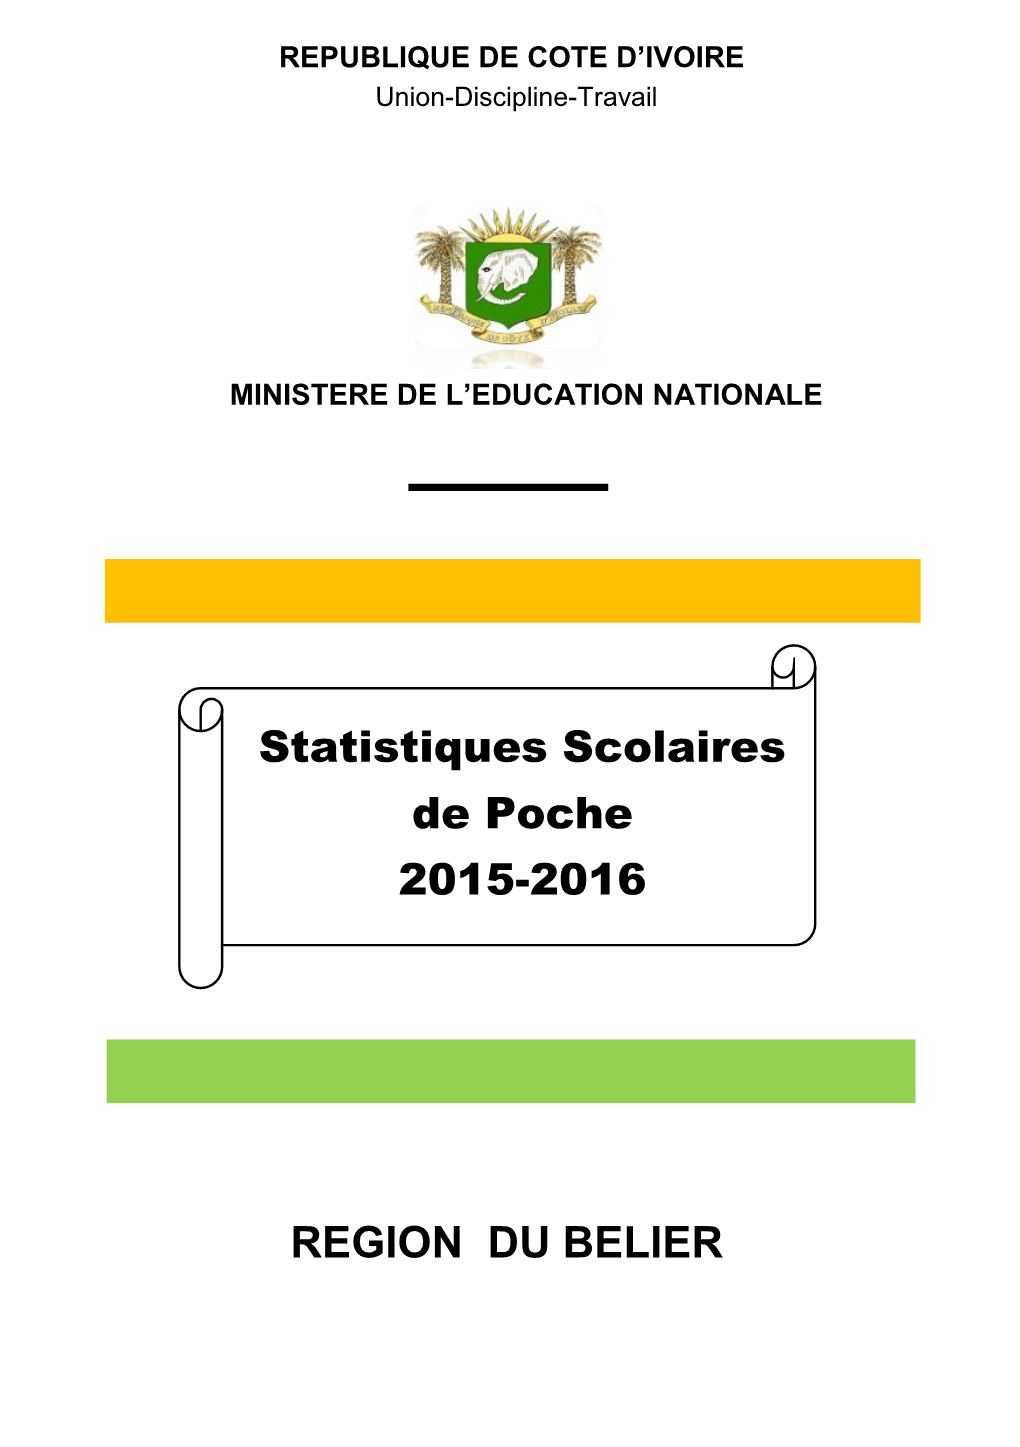 REGION DU BELIER Statistiques Scolaires De Poche 2015-2016